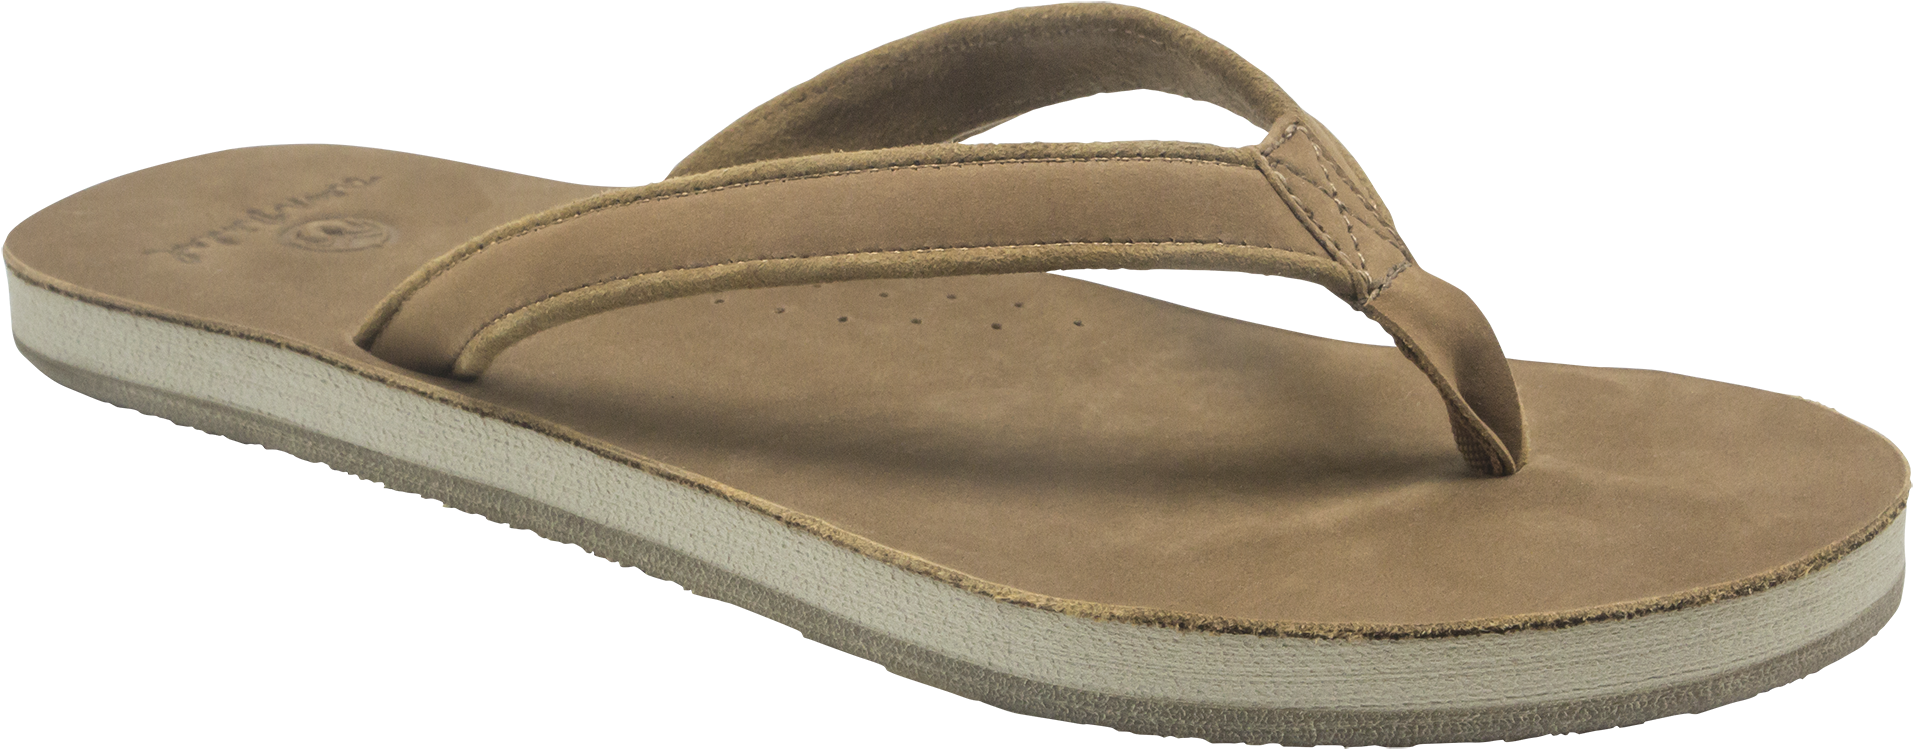 Brown Leather Flip Flop Sandal PNG